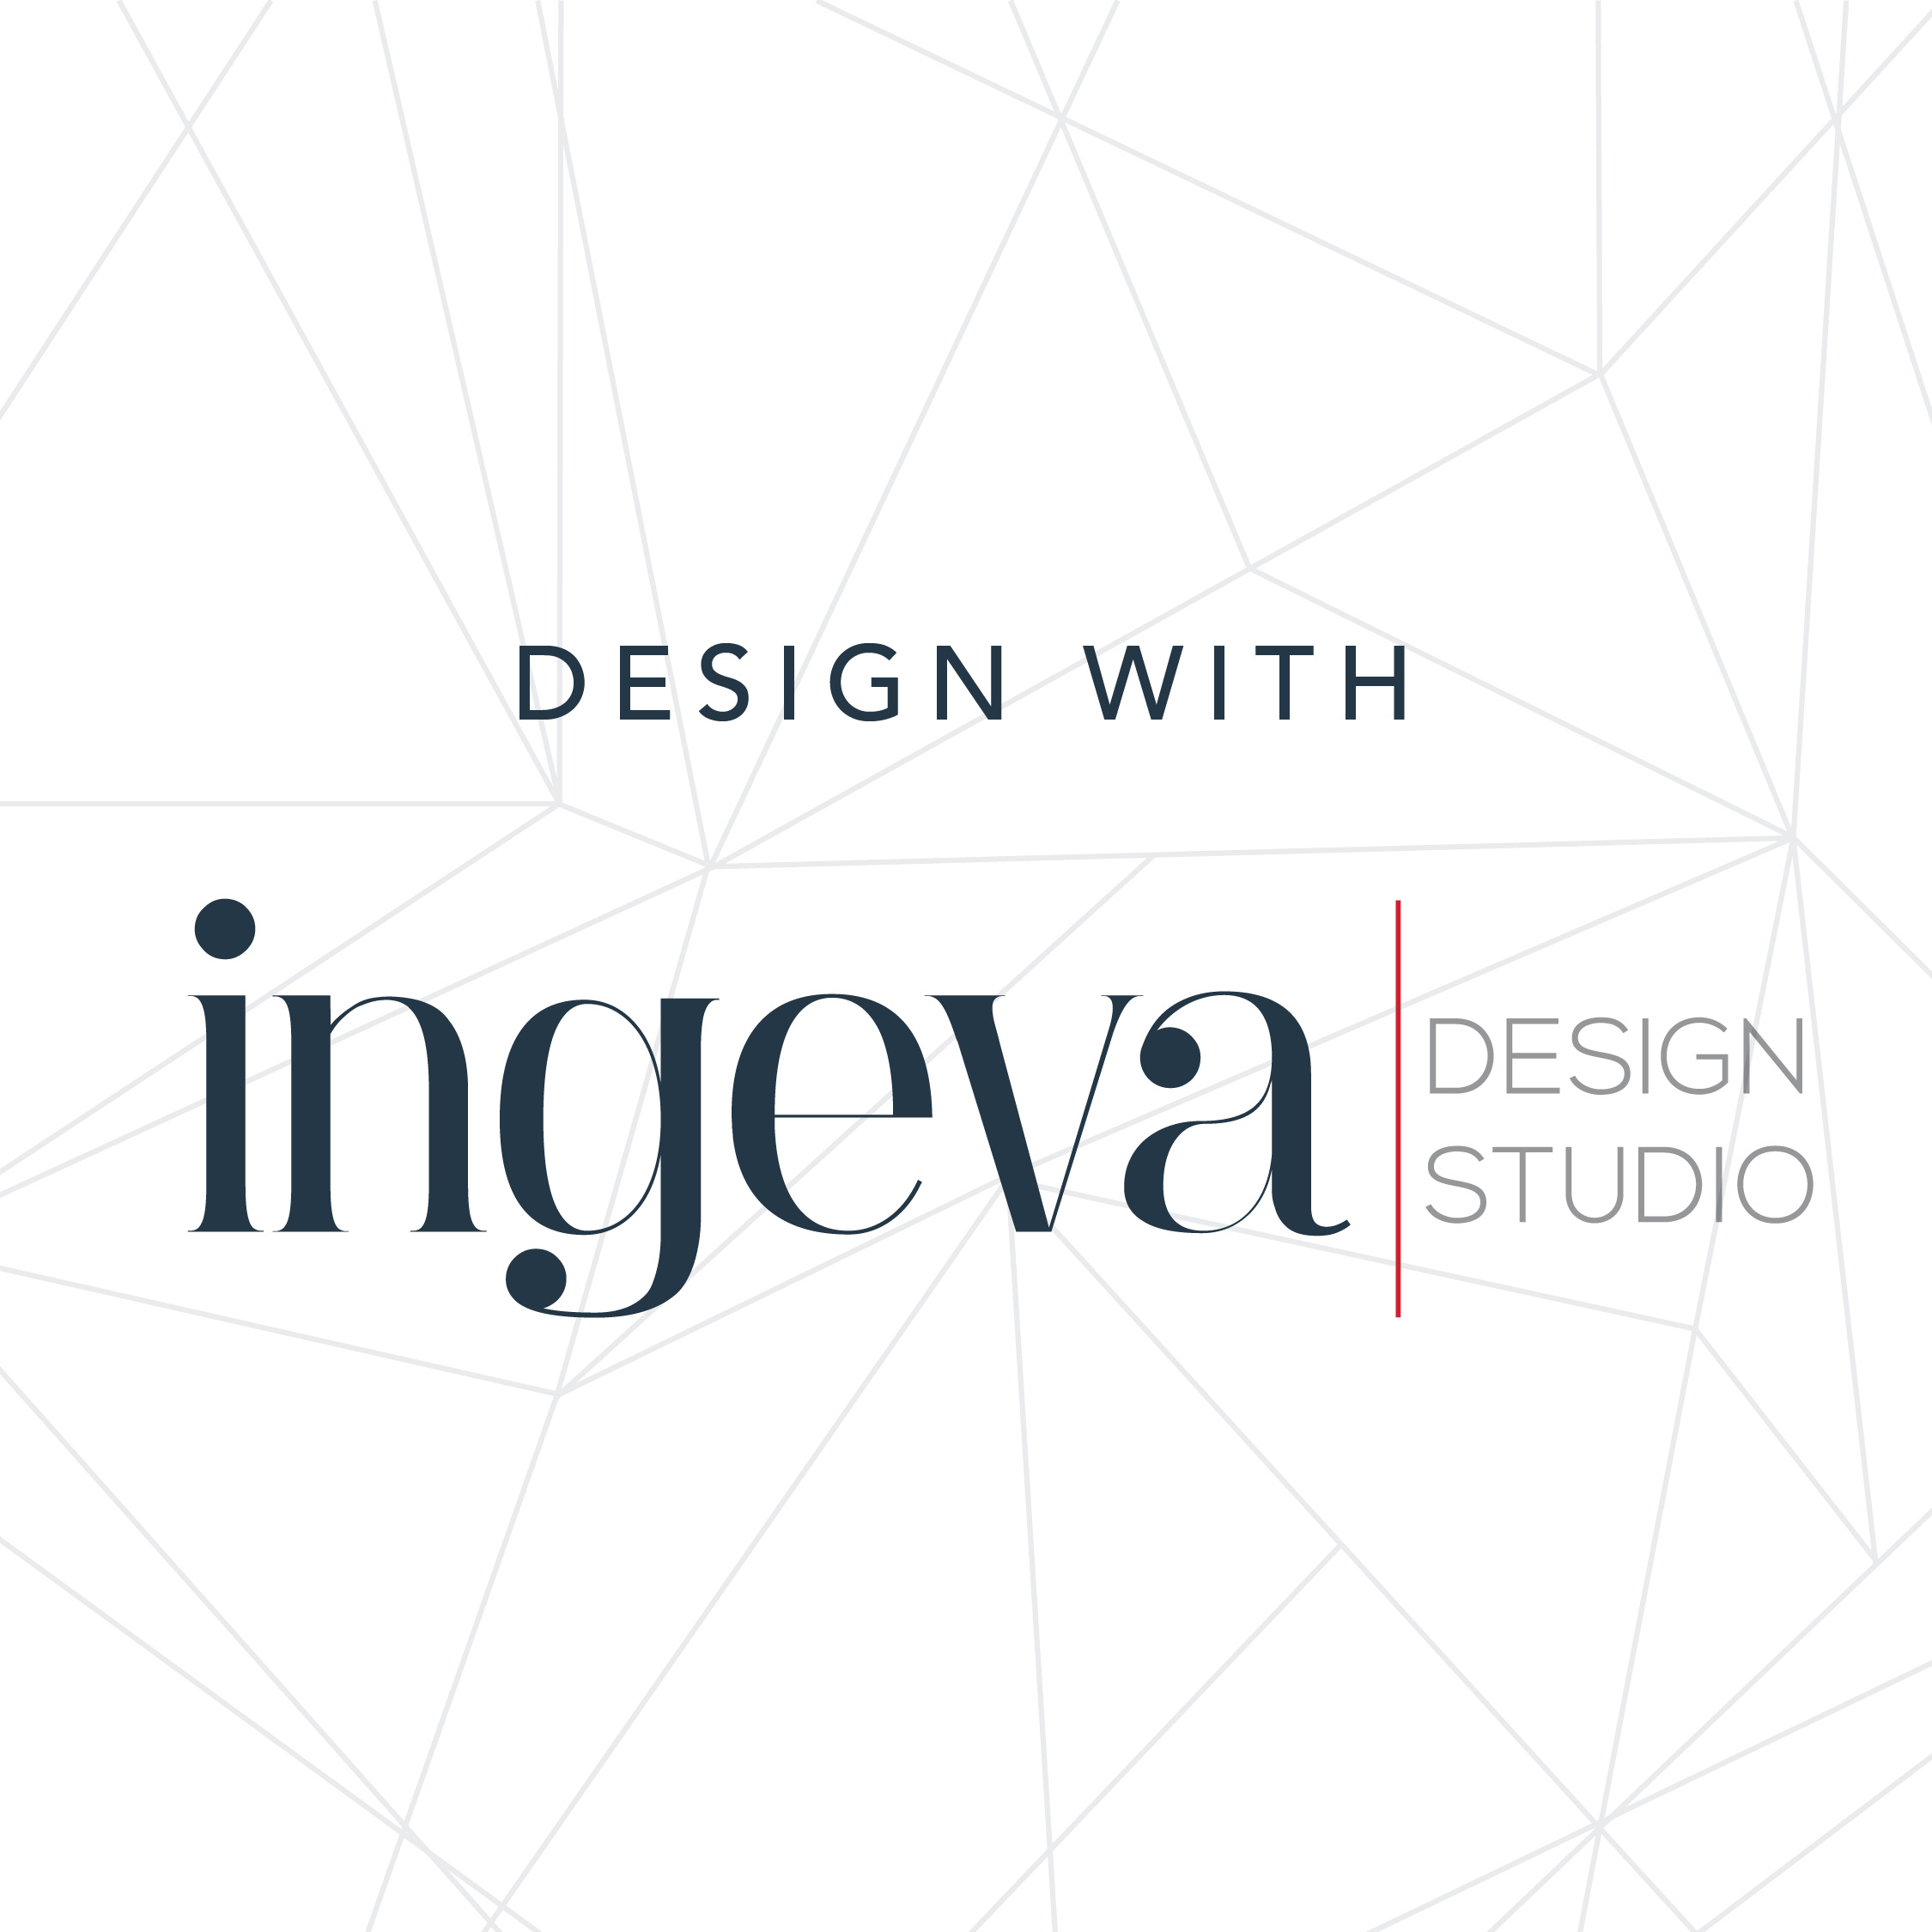 Design with ingeva